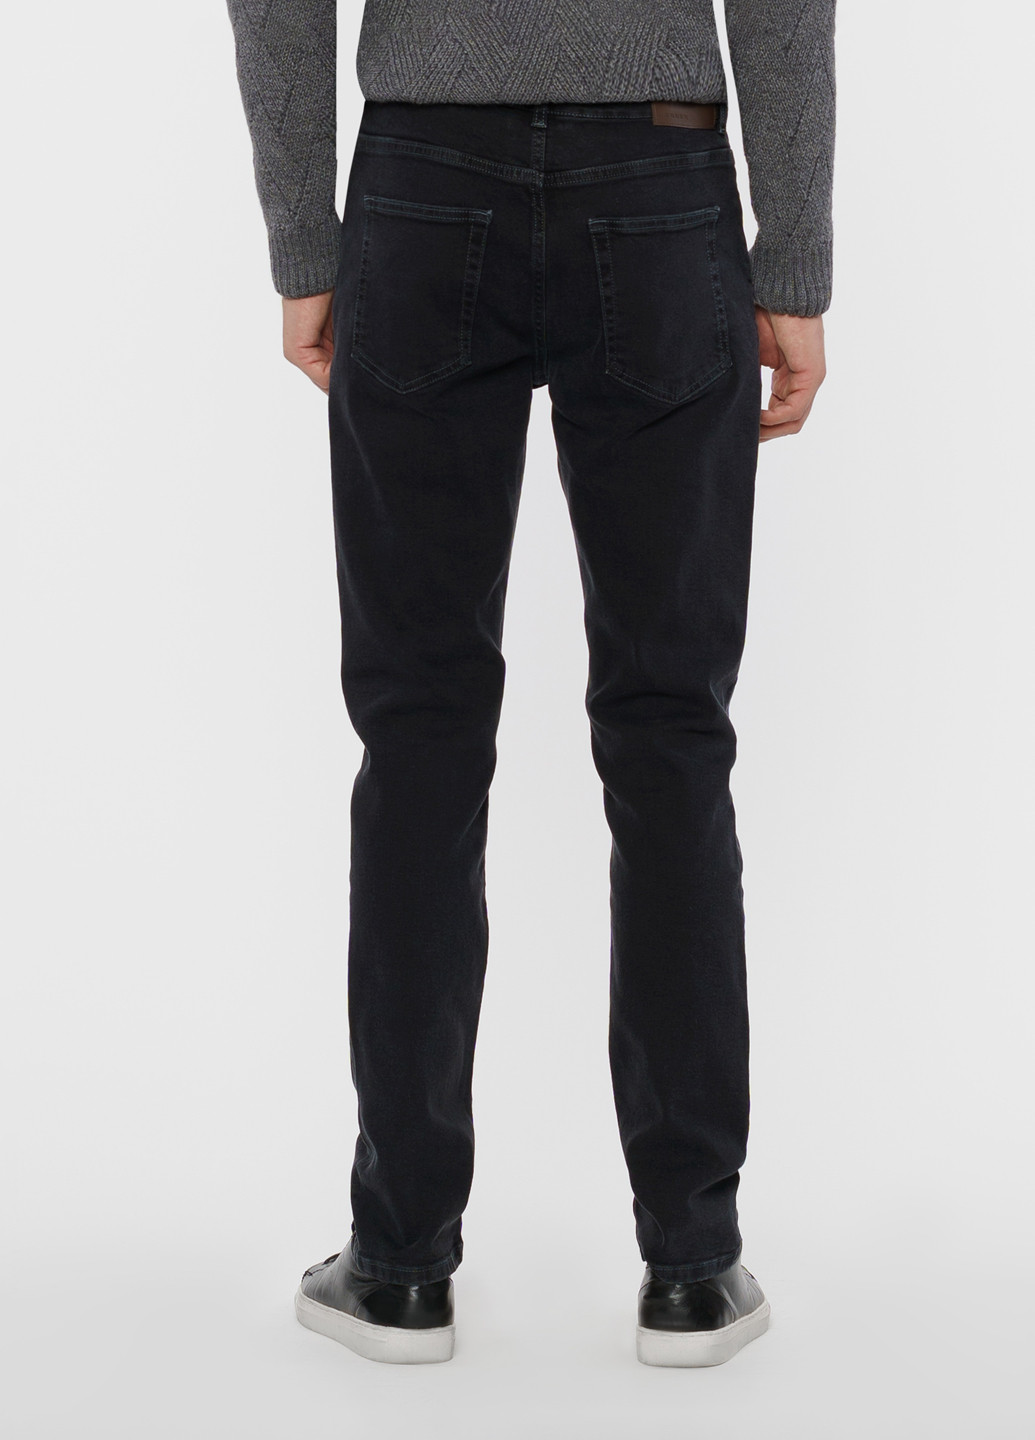 Черные зимние джинсы мужские SLIM FIT Arber